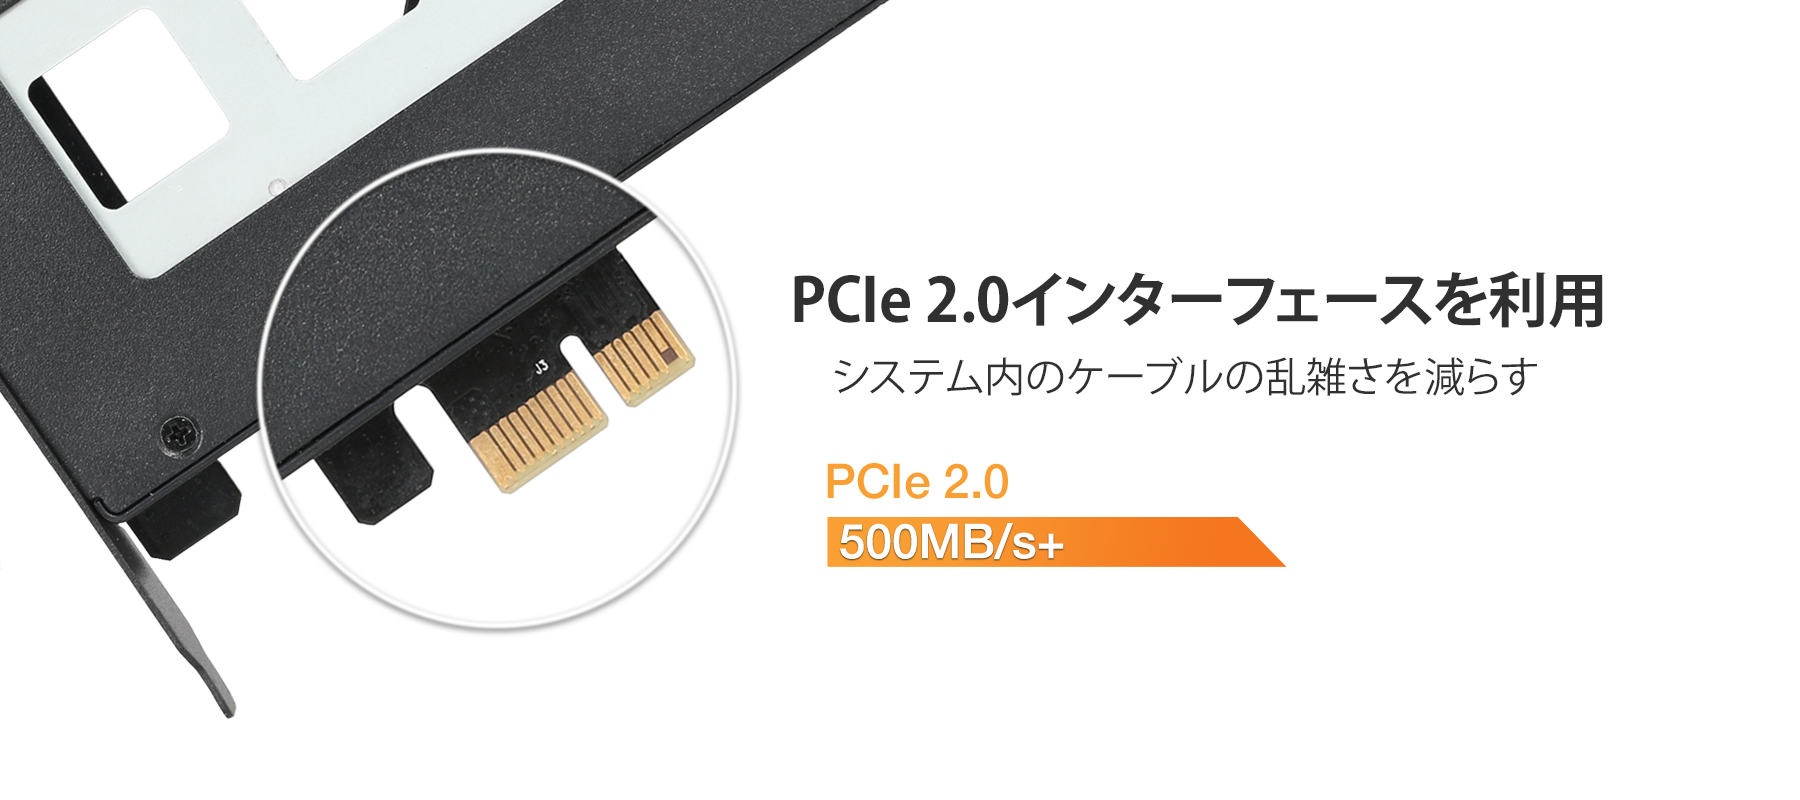 mb839sp-b PCIe 2.0インターフェースを使用すると